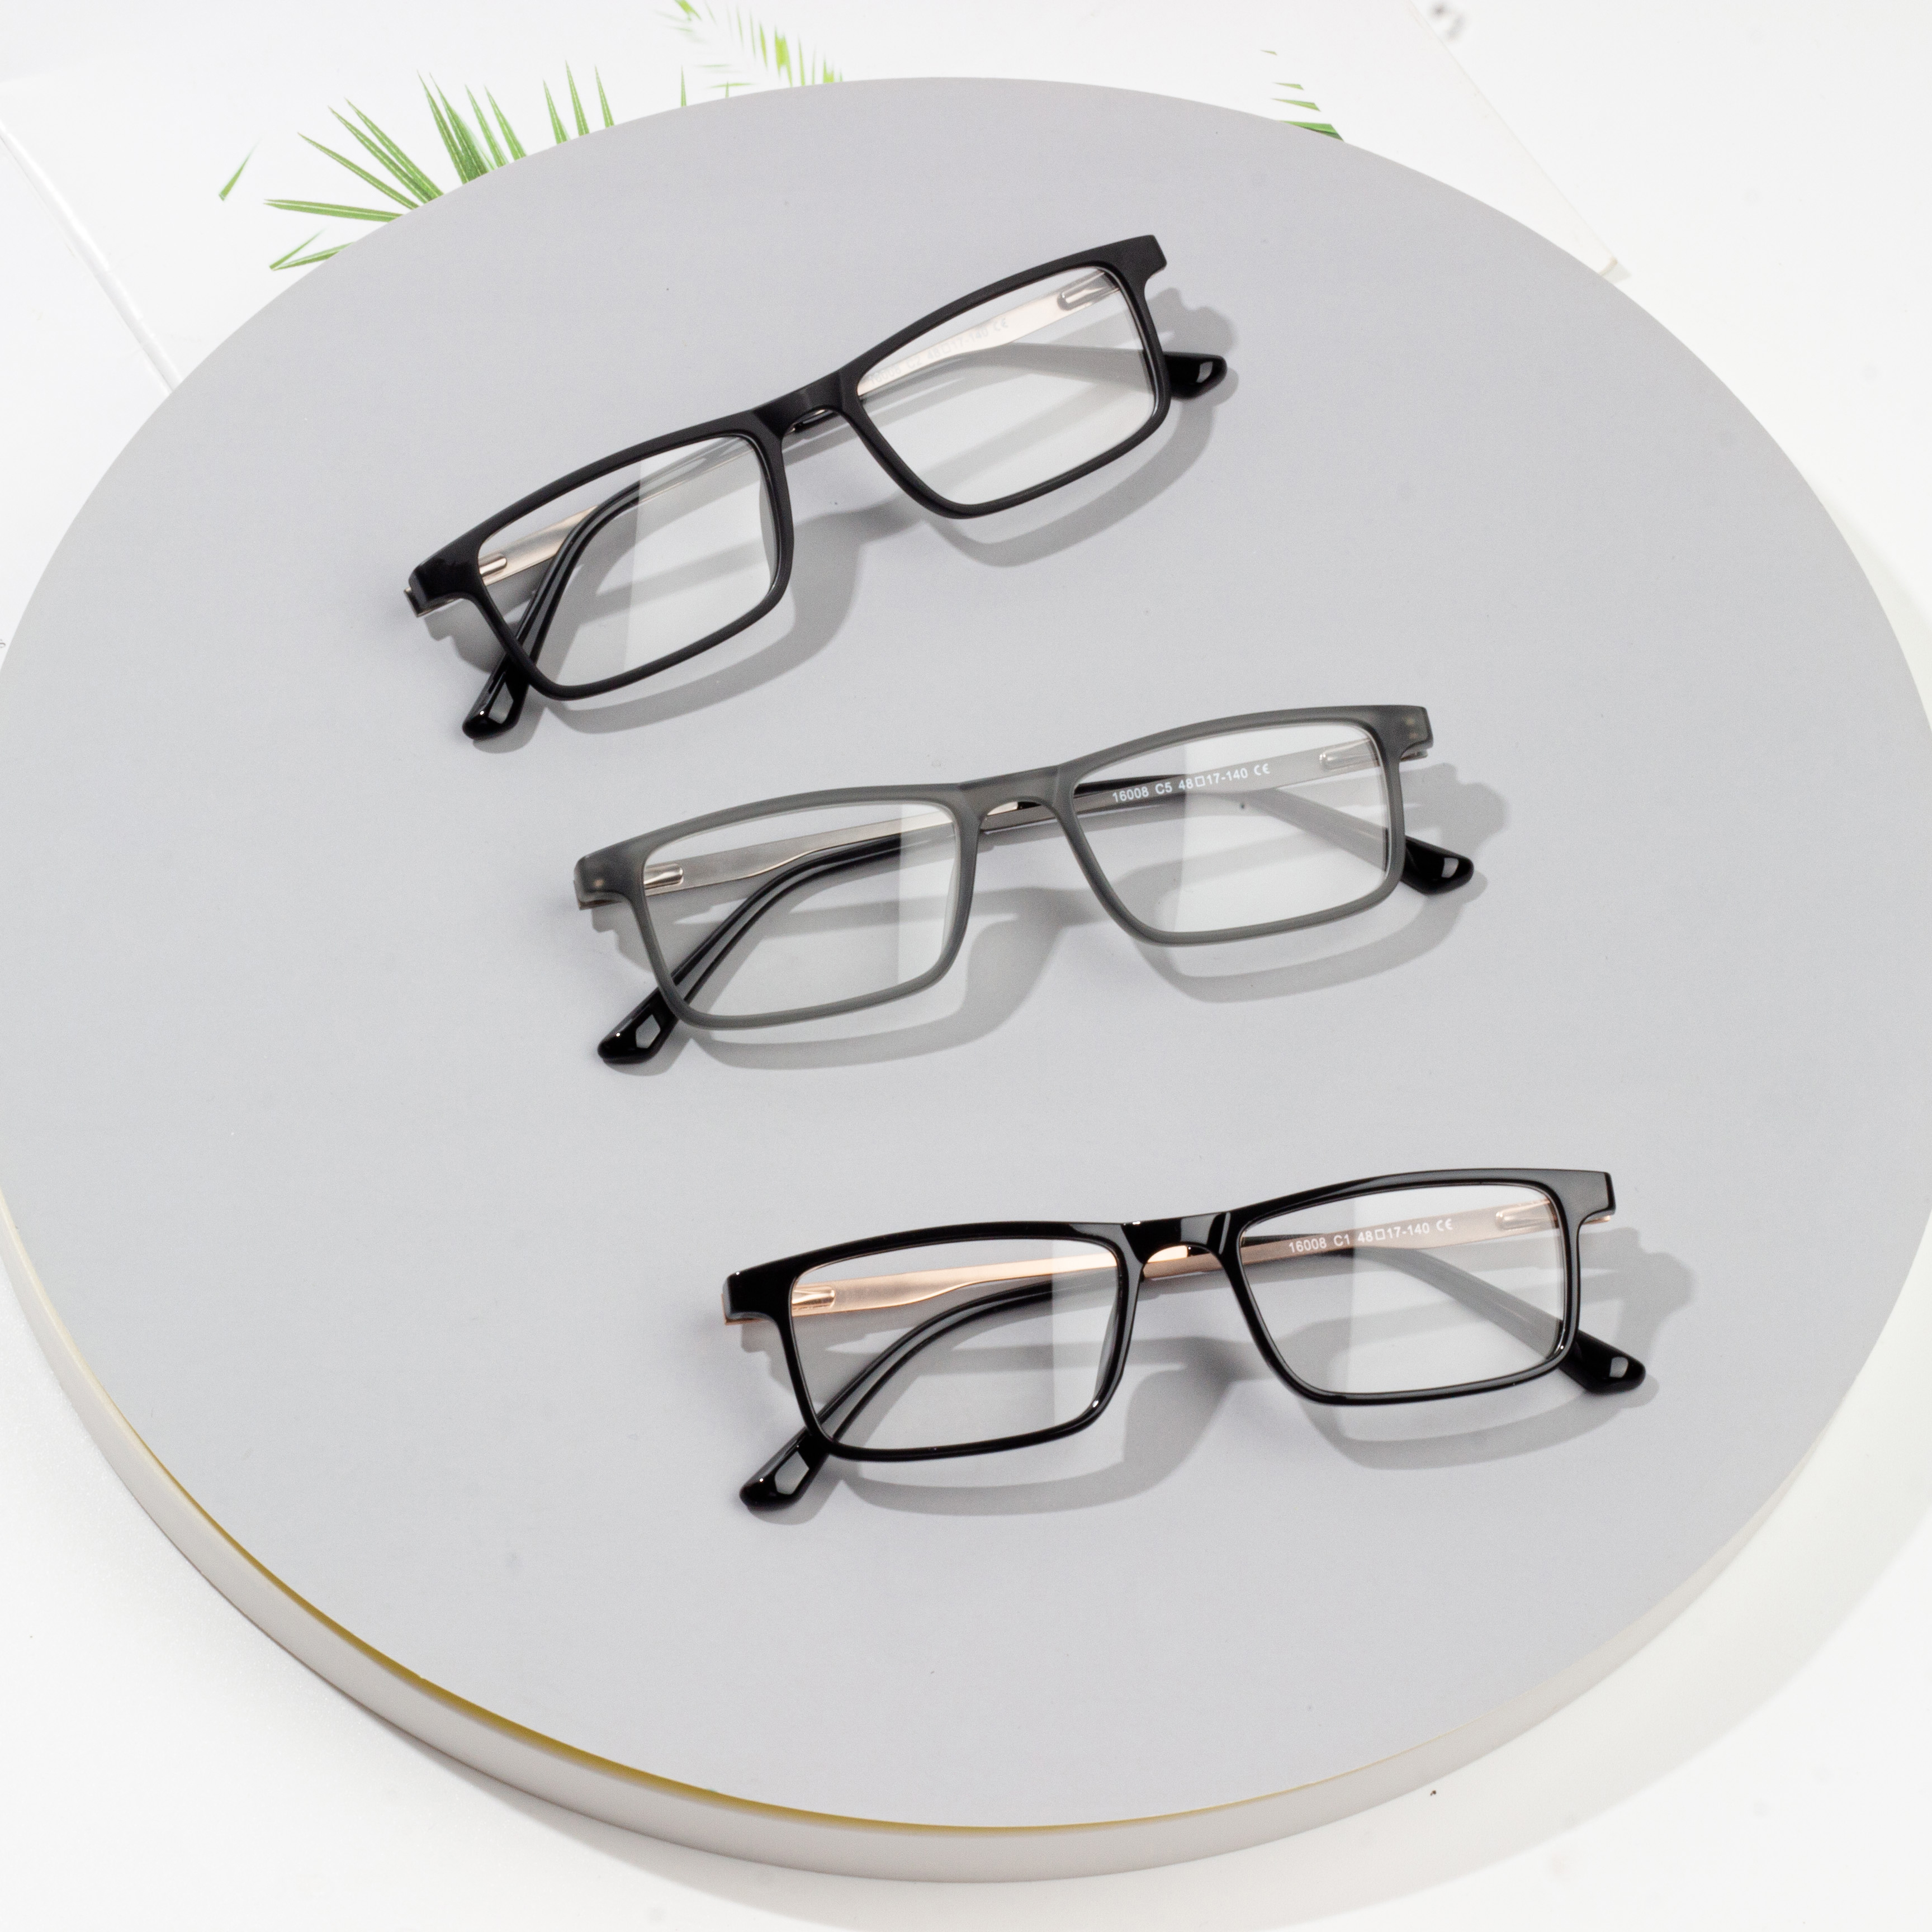 eyeglass frames for men